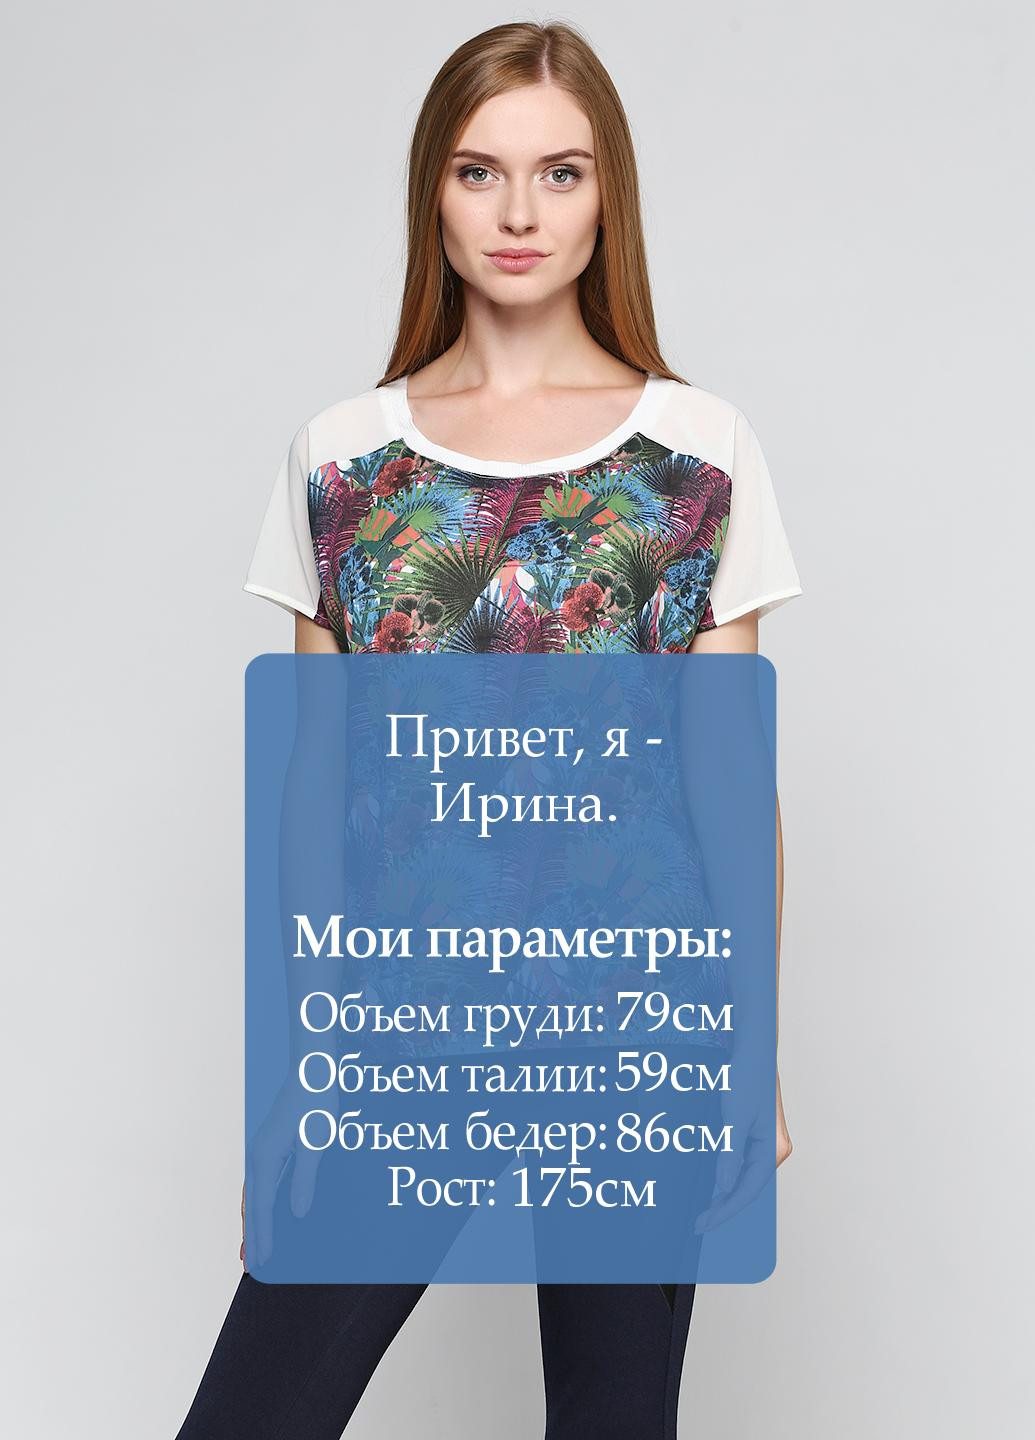 Комбинированная летняя блуза Friendtex